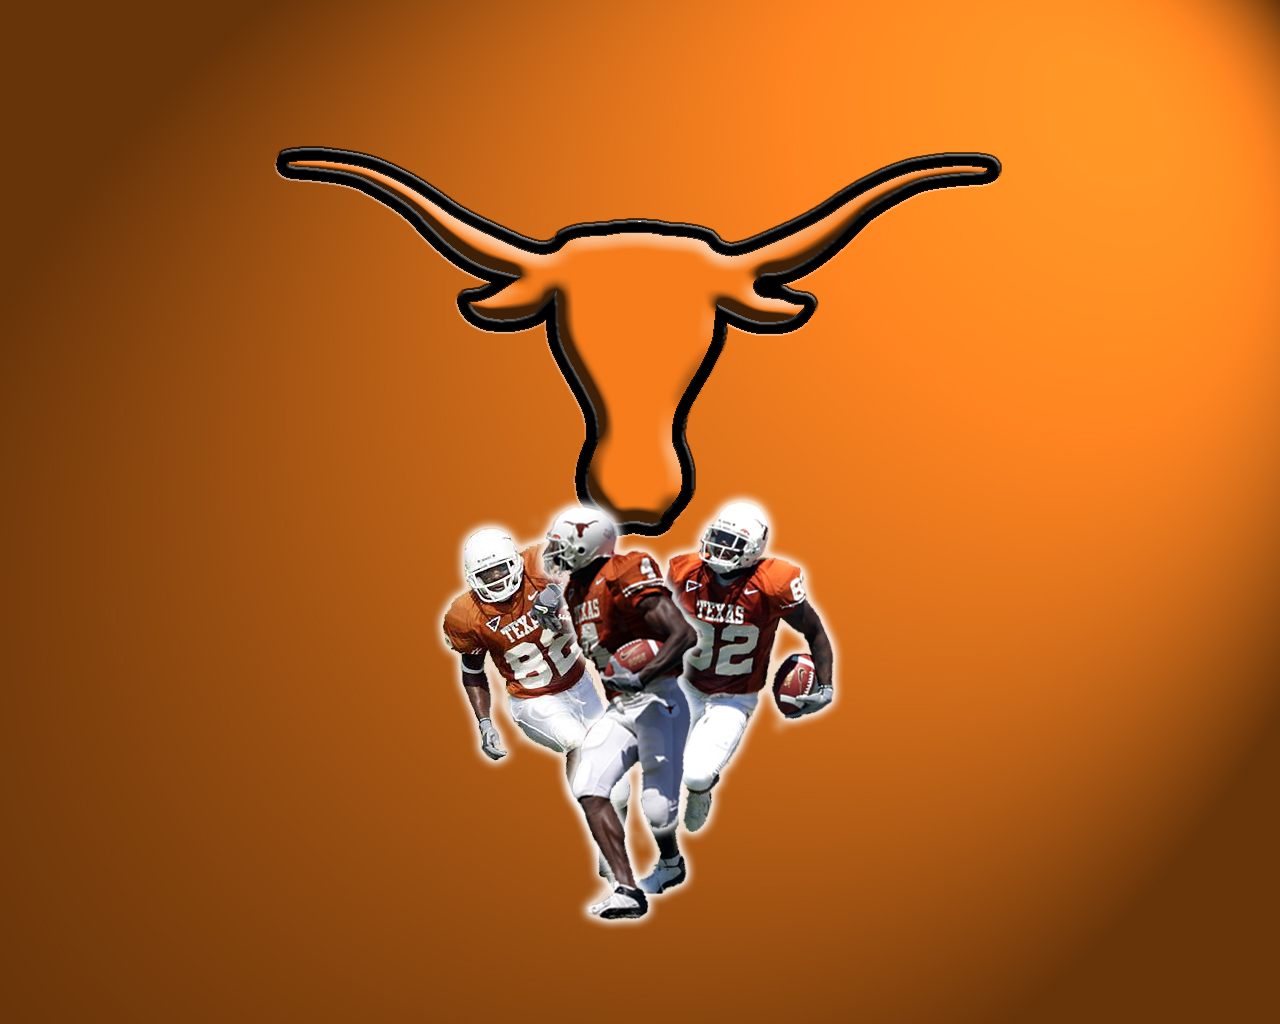 Texas Longhorns Football Wallpaper Desktop Texas longhorns